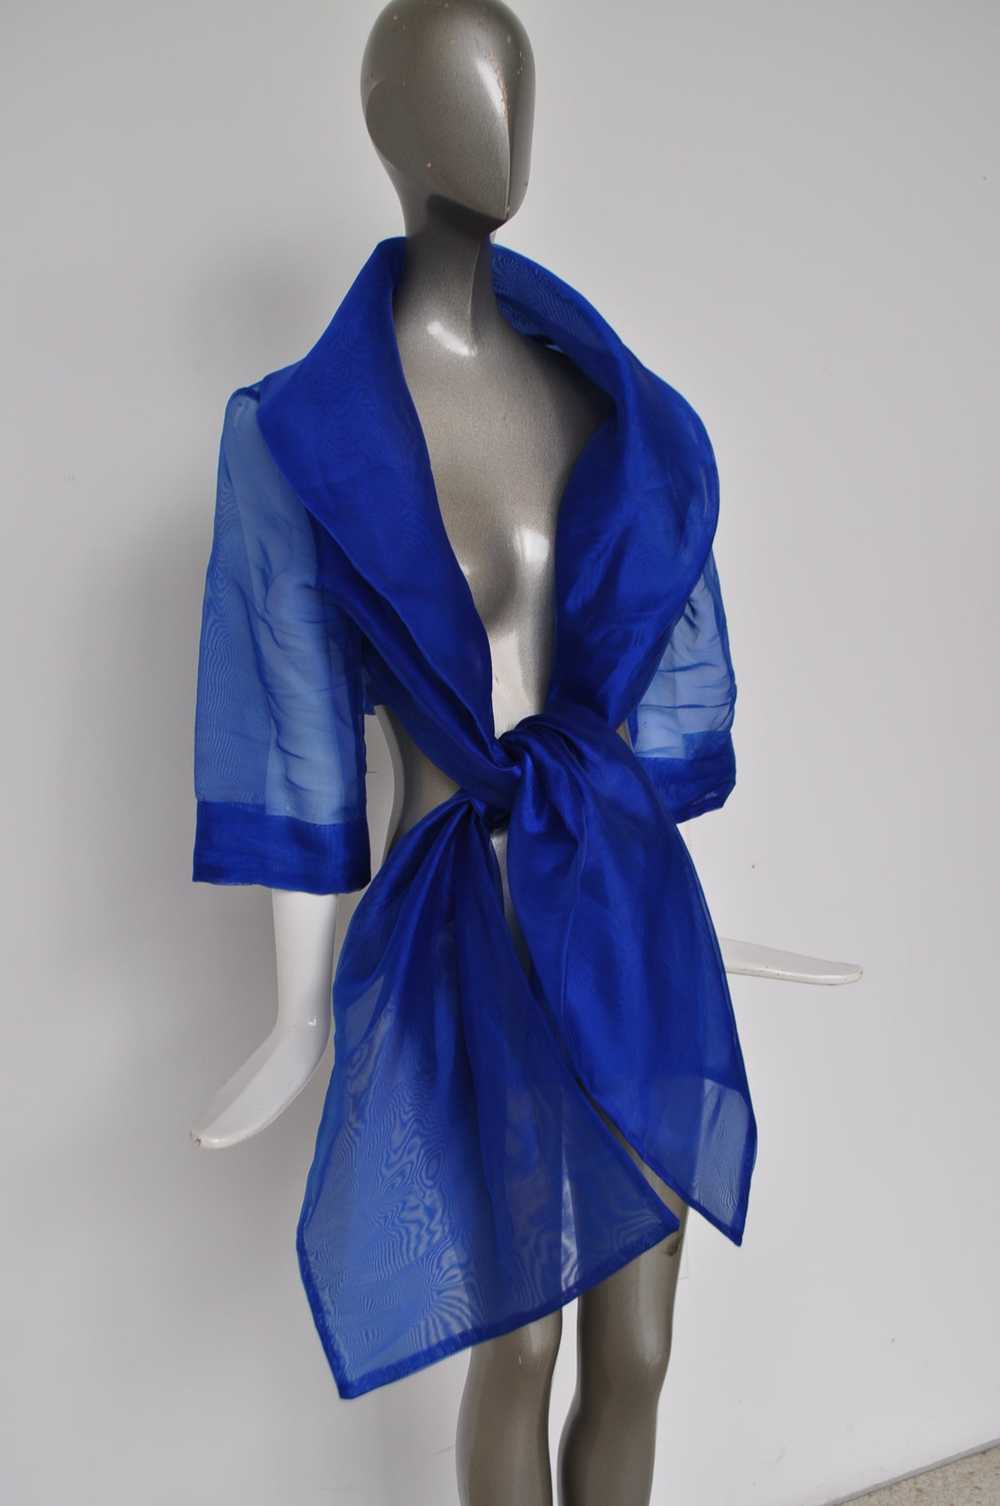 Avantgarde Gauze blouse vibrant blue color - image 2